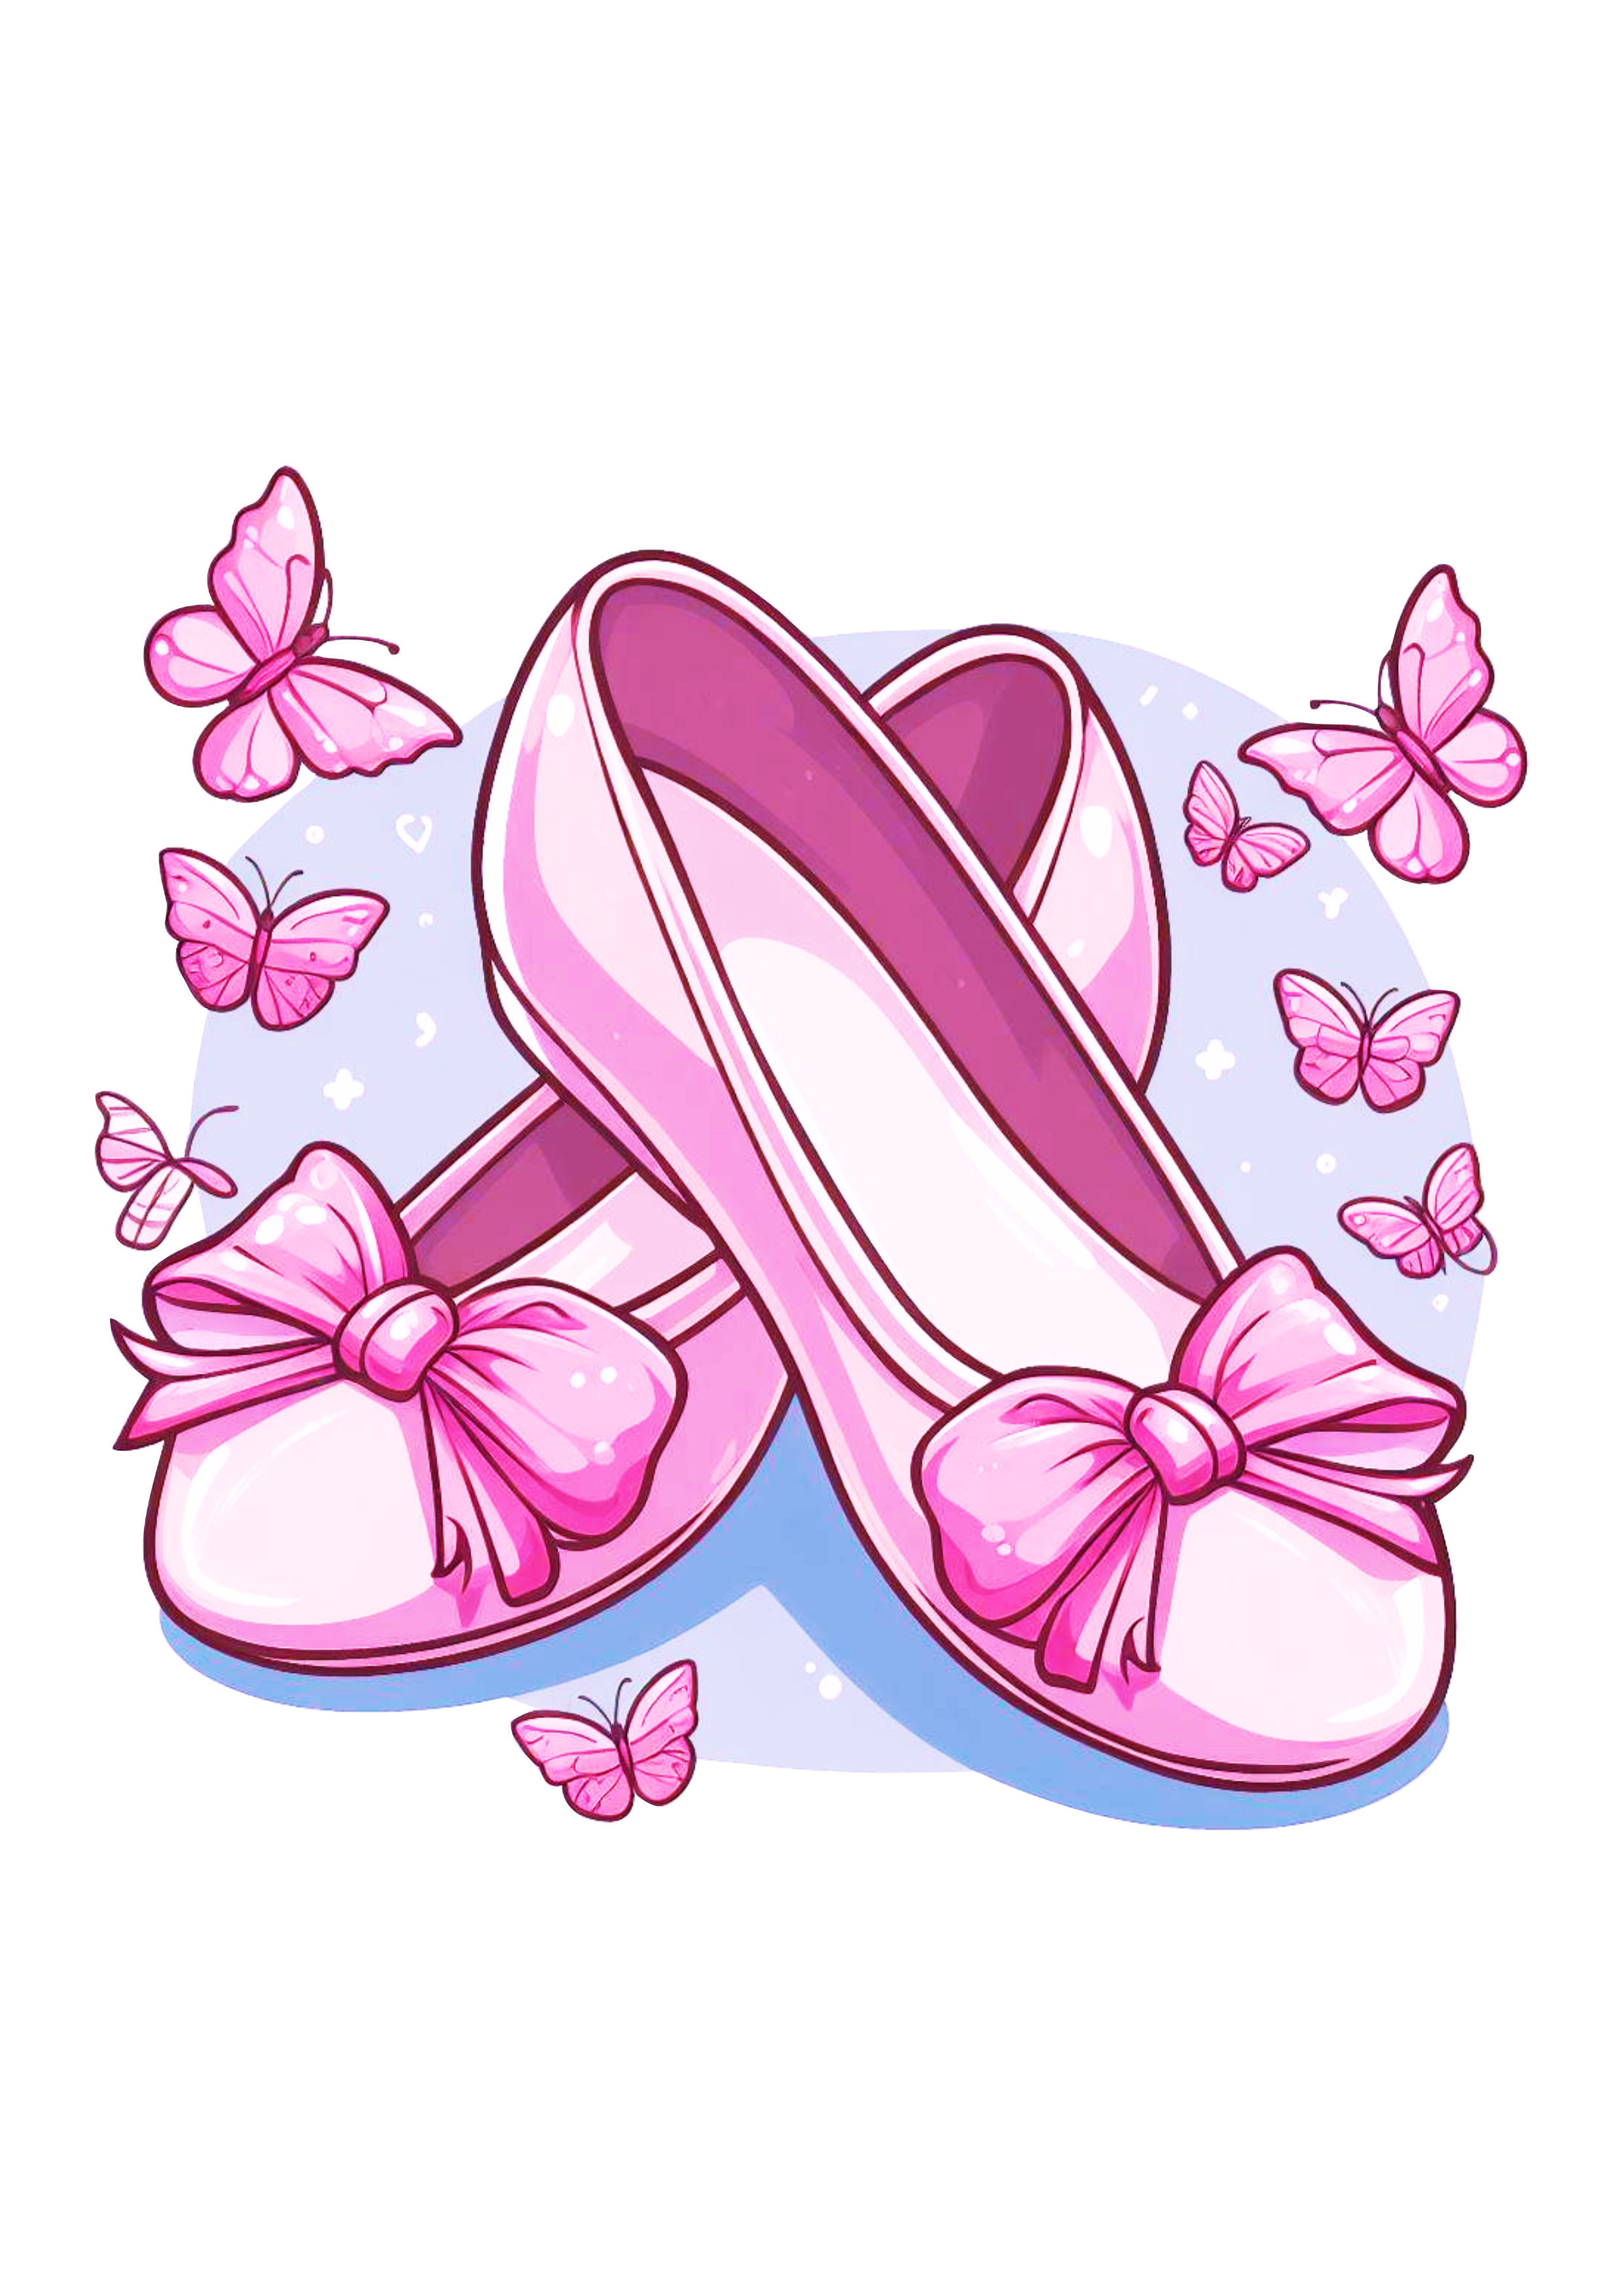 Sapatilha de bailarina rosa desenho fofinho com borboletas pack de imagens fundo transparente png